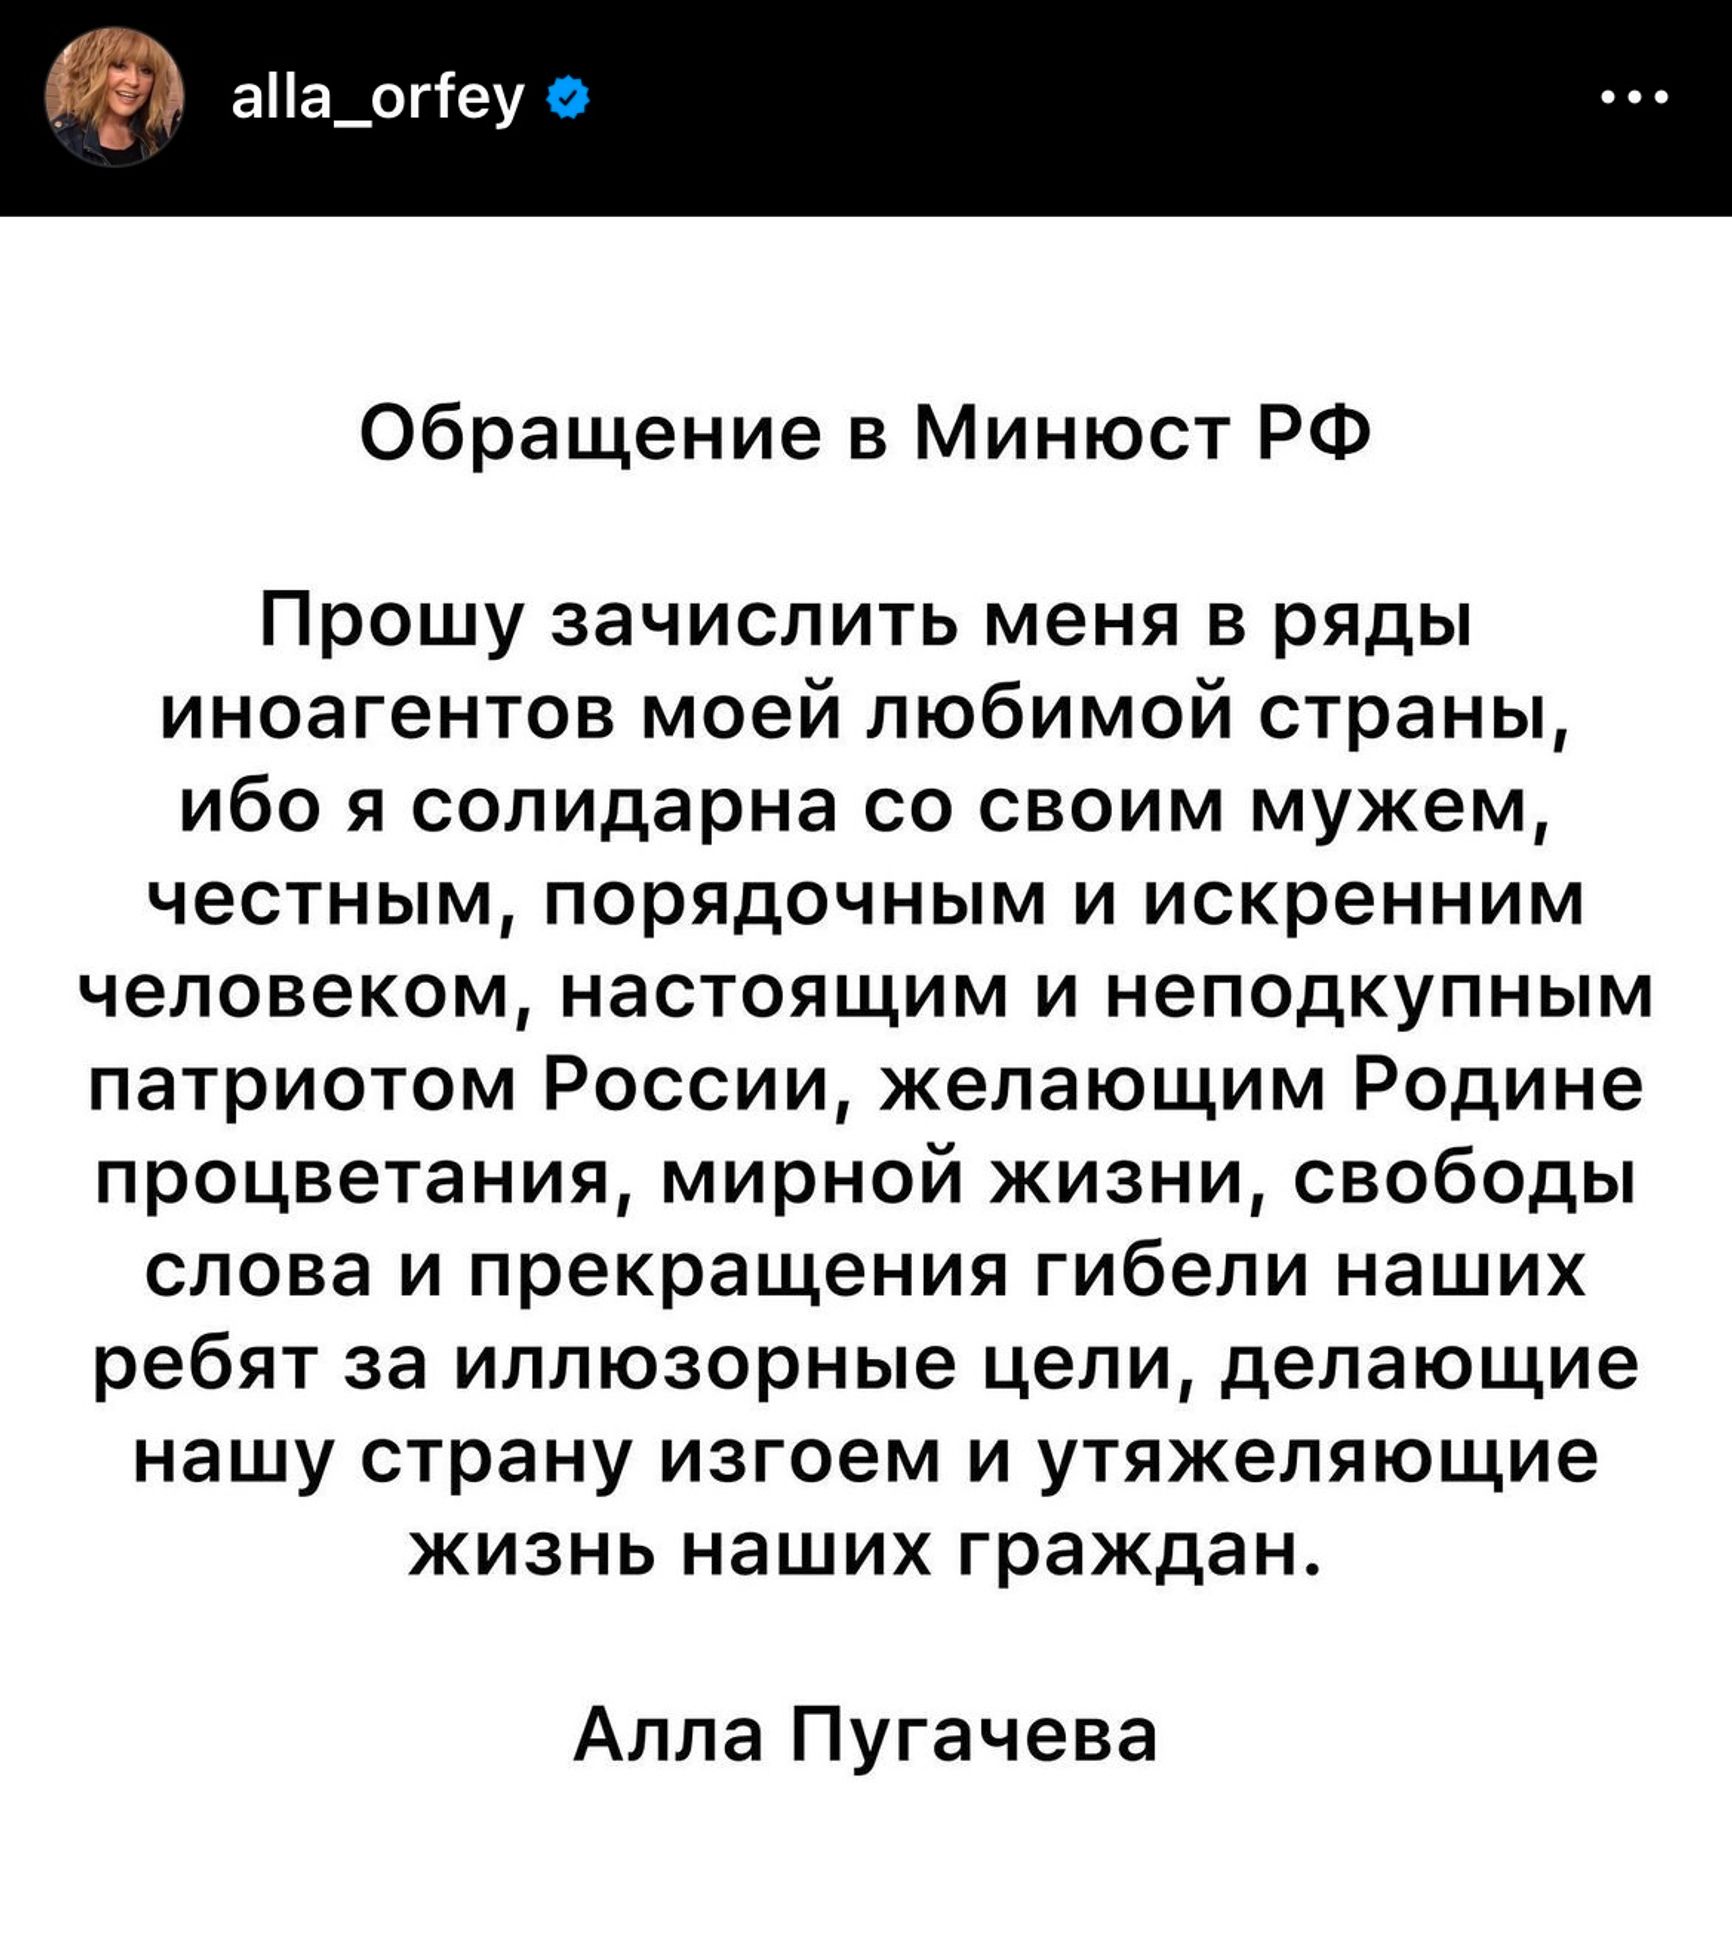 Обращение Аллы Пугачевой в Instagram